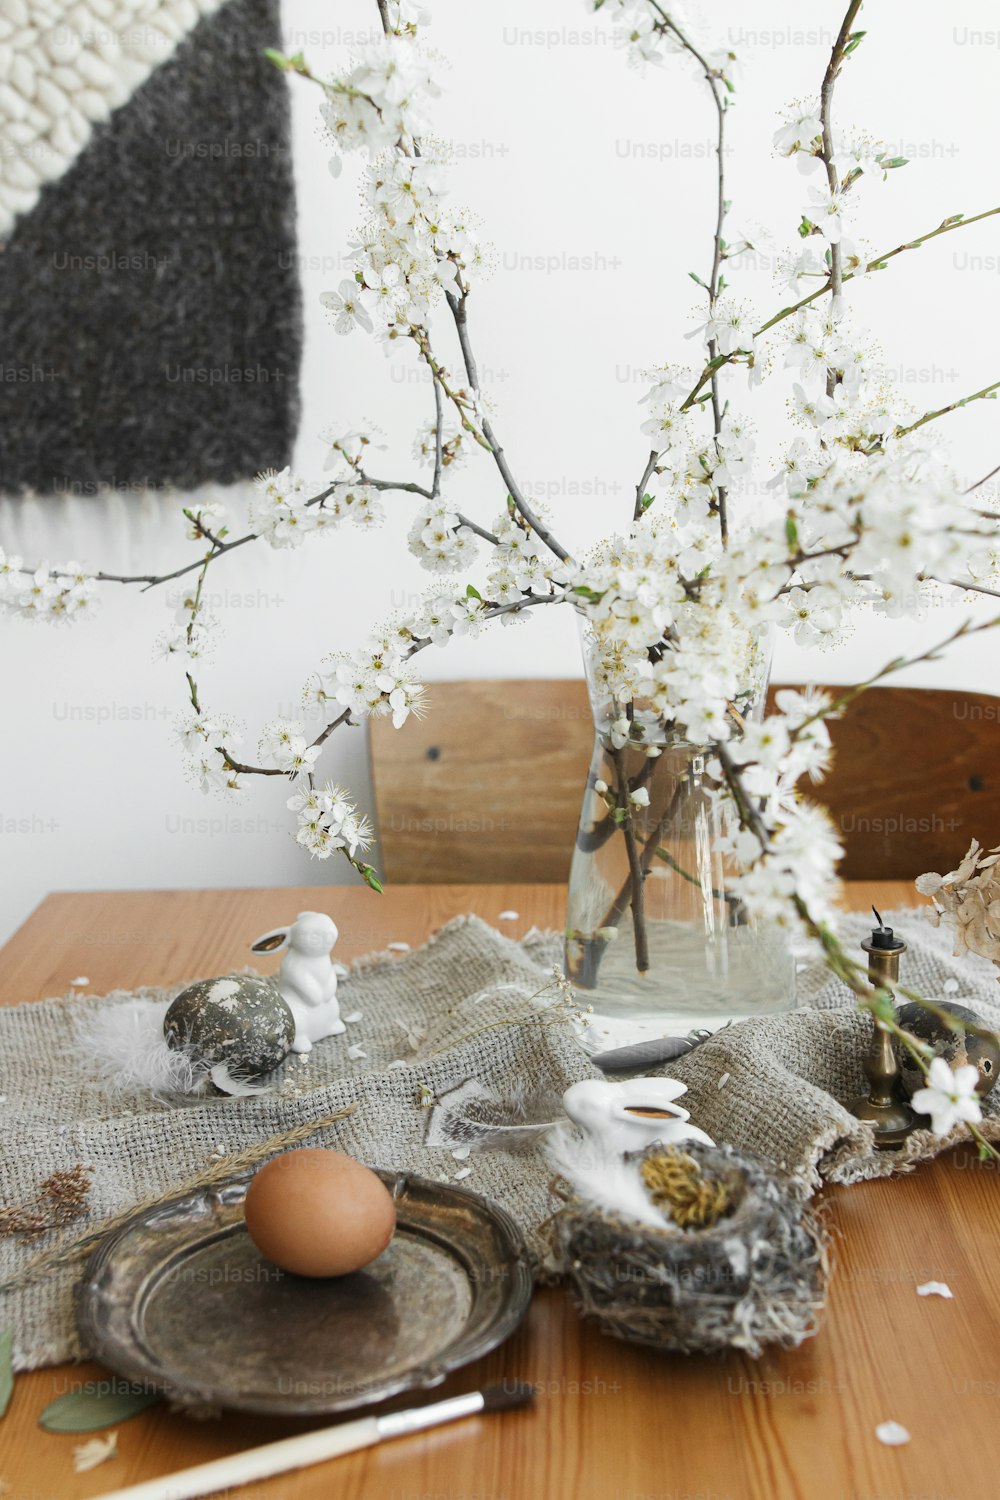 ¡Felices Pascuas! Huevos de Pascua naturales, conejitos blancos, plumas, nido y rama de cerezo en flor con pétalos en servilleta de lino rústico sobre mesa. Espacio para el texto. Decoración rural ecológica